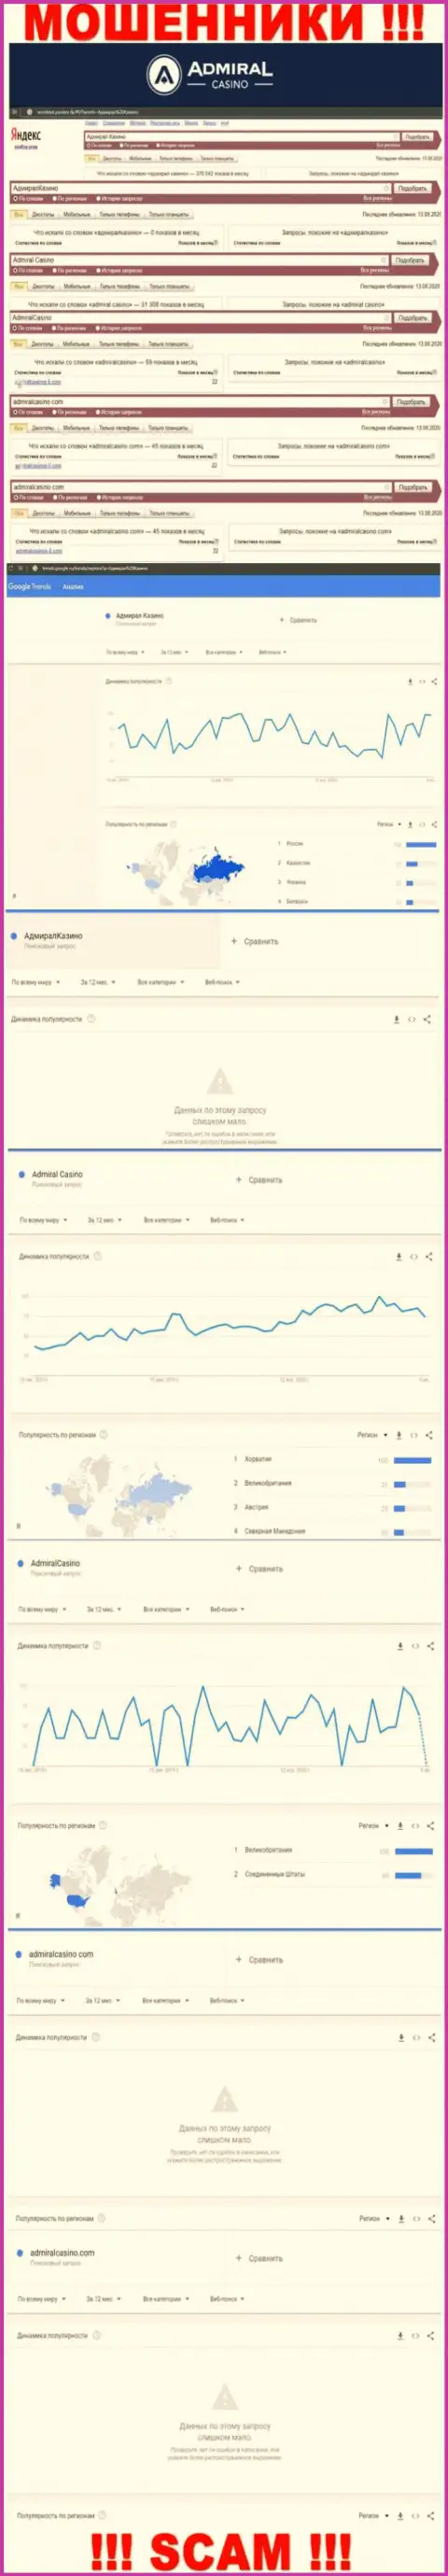 Сколько людей пытались разыскать материал о АдмиралКазино Ком - статистика поисковых запросов по этой организации